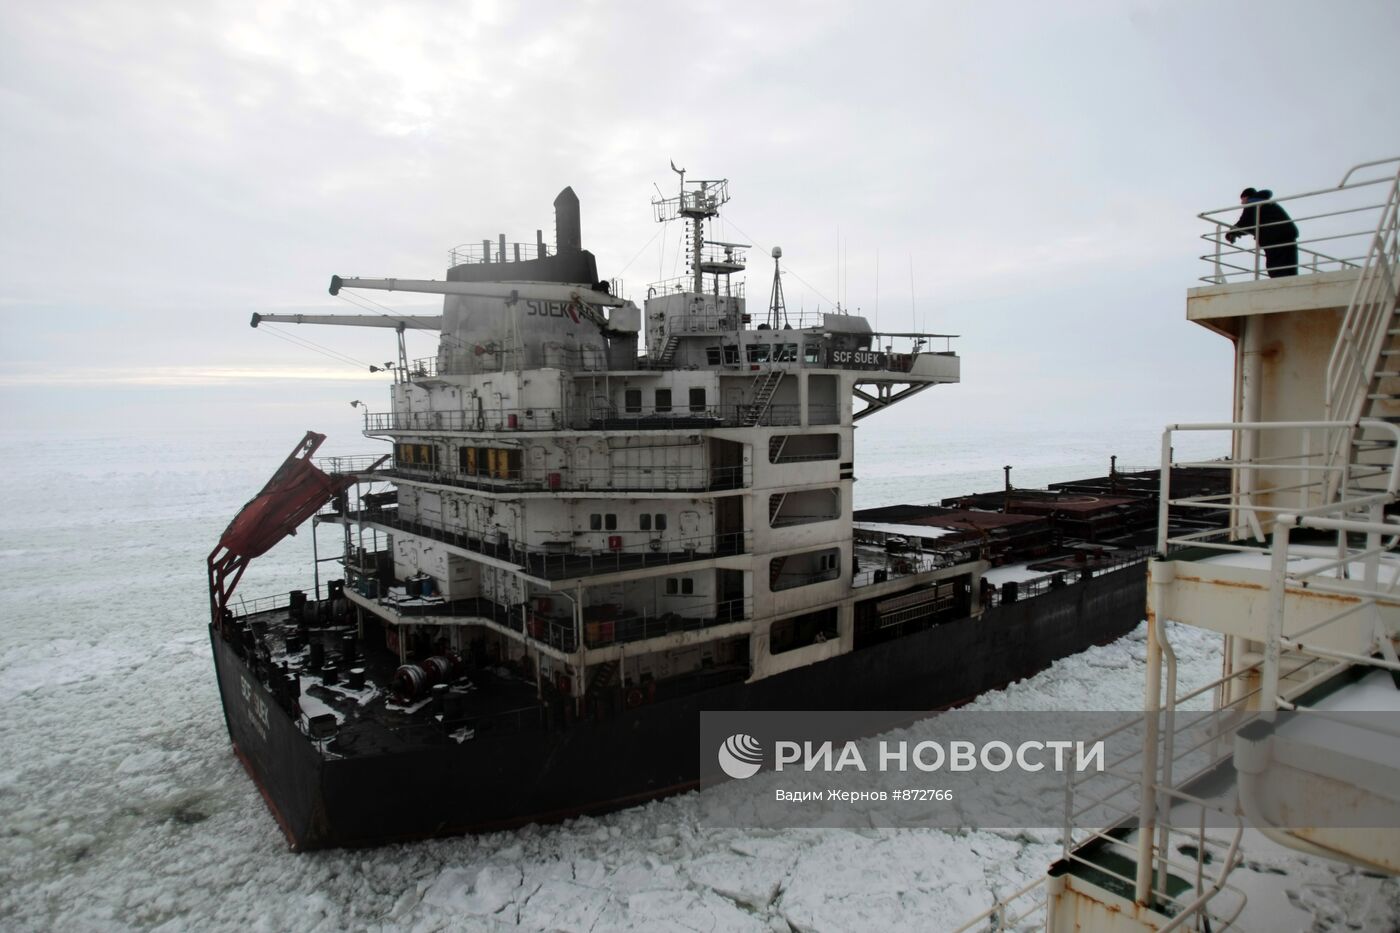 Атомный ледокол "Вайгач" проводит караван судов в Финском заливе